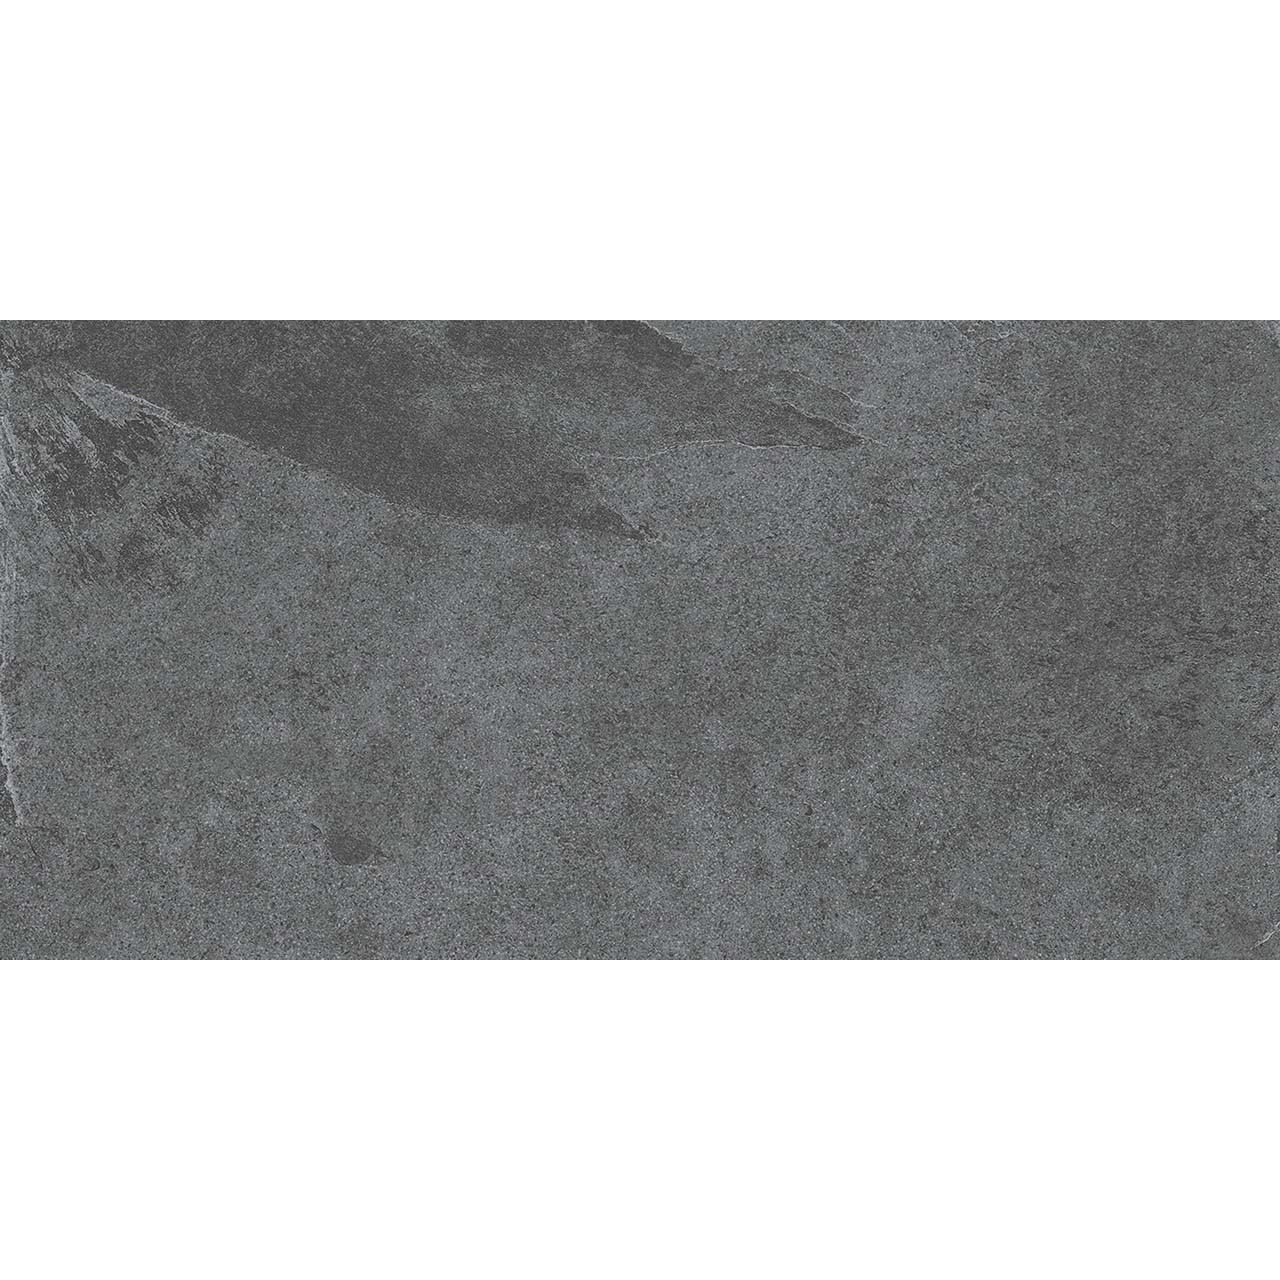 Плитка Estima Terra TE03 неполированный темно-серый 60x120 см плитка estima terra te01 36688 60х60 см неполированный бежевый